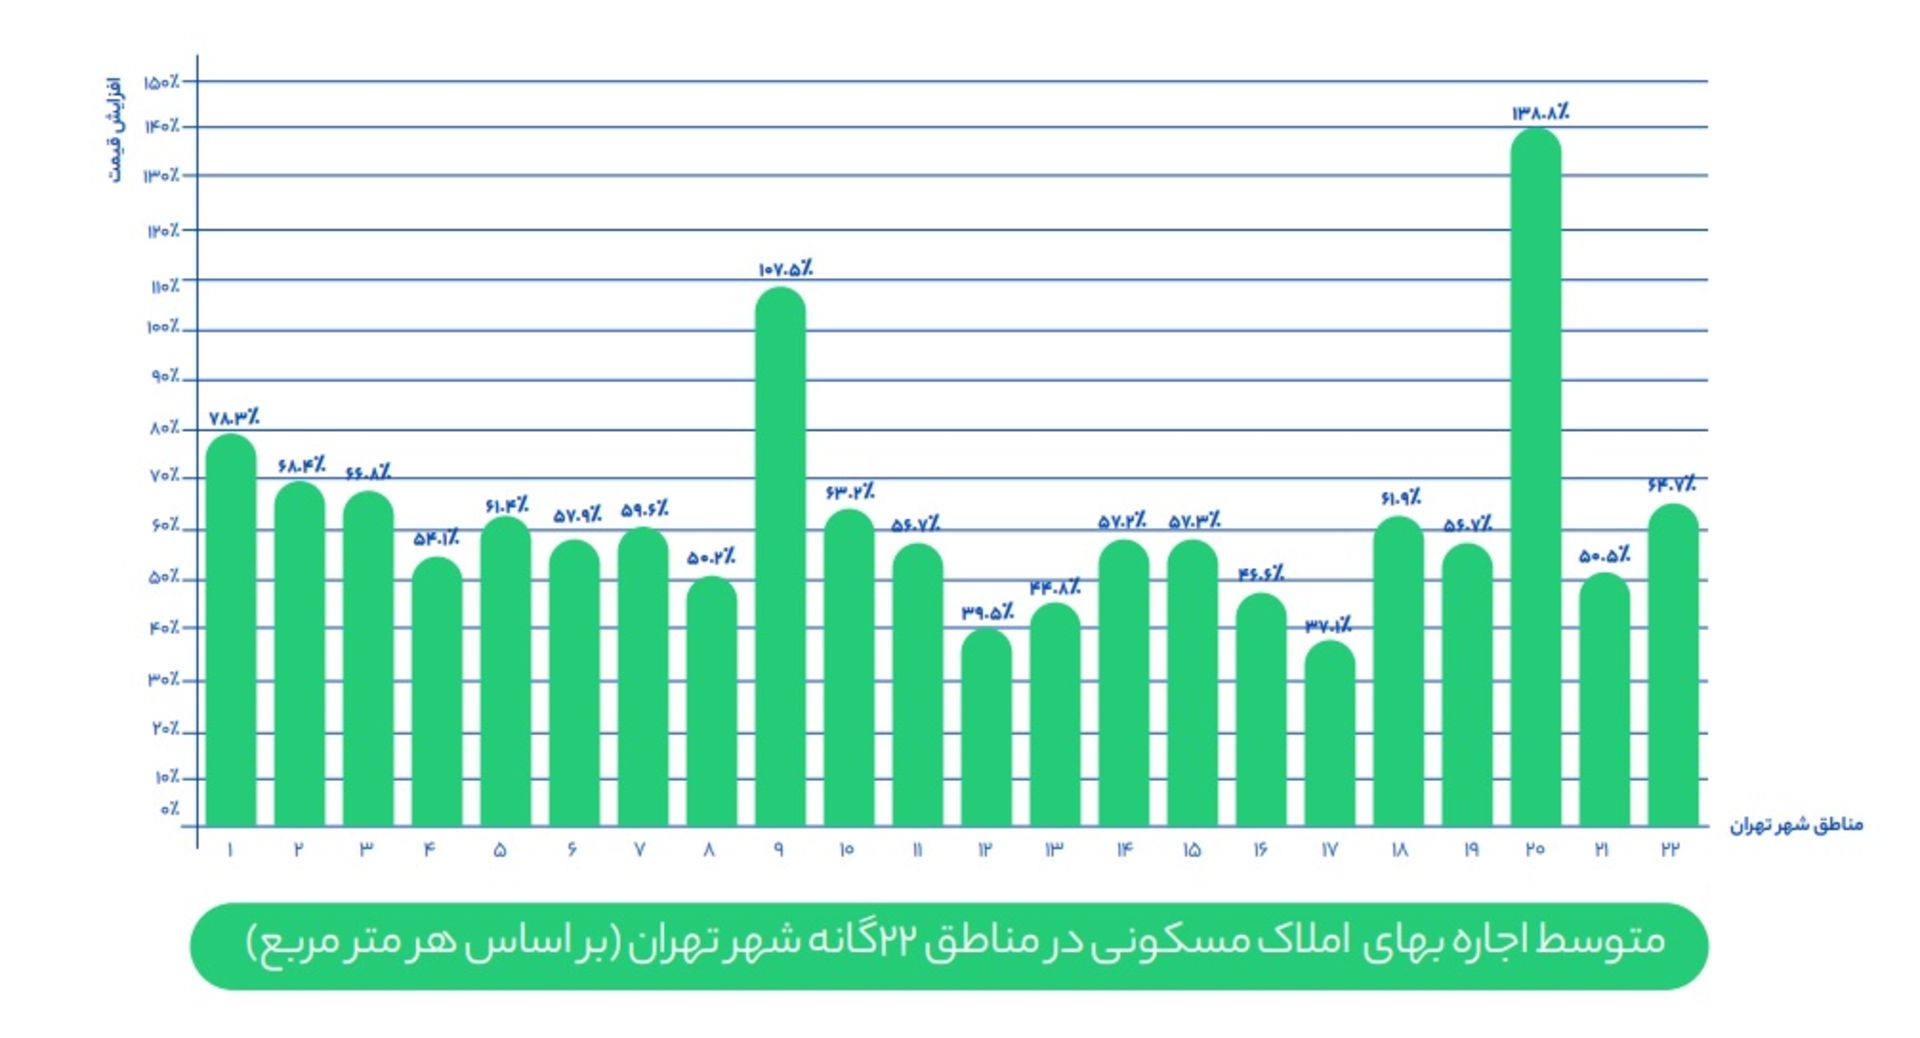 نمودار شیپور از متوسط قیمت اجاره مناطق تهران